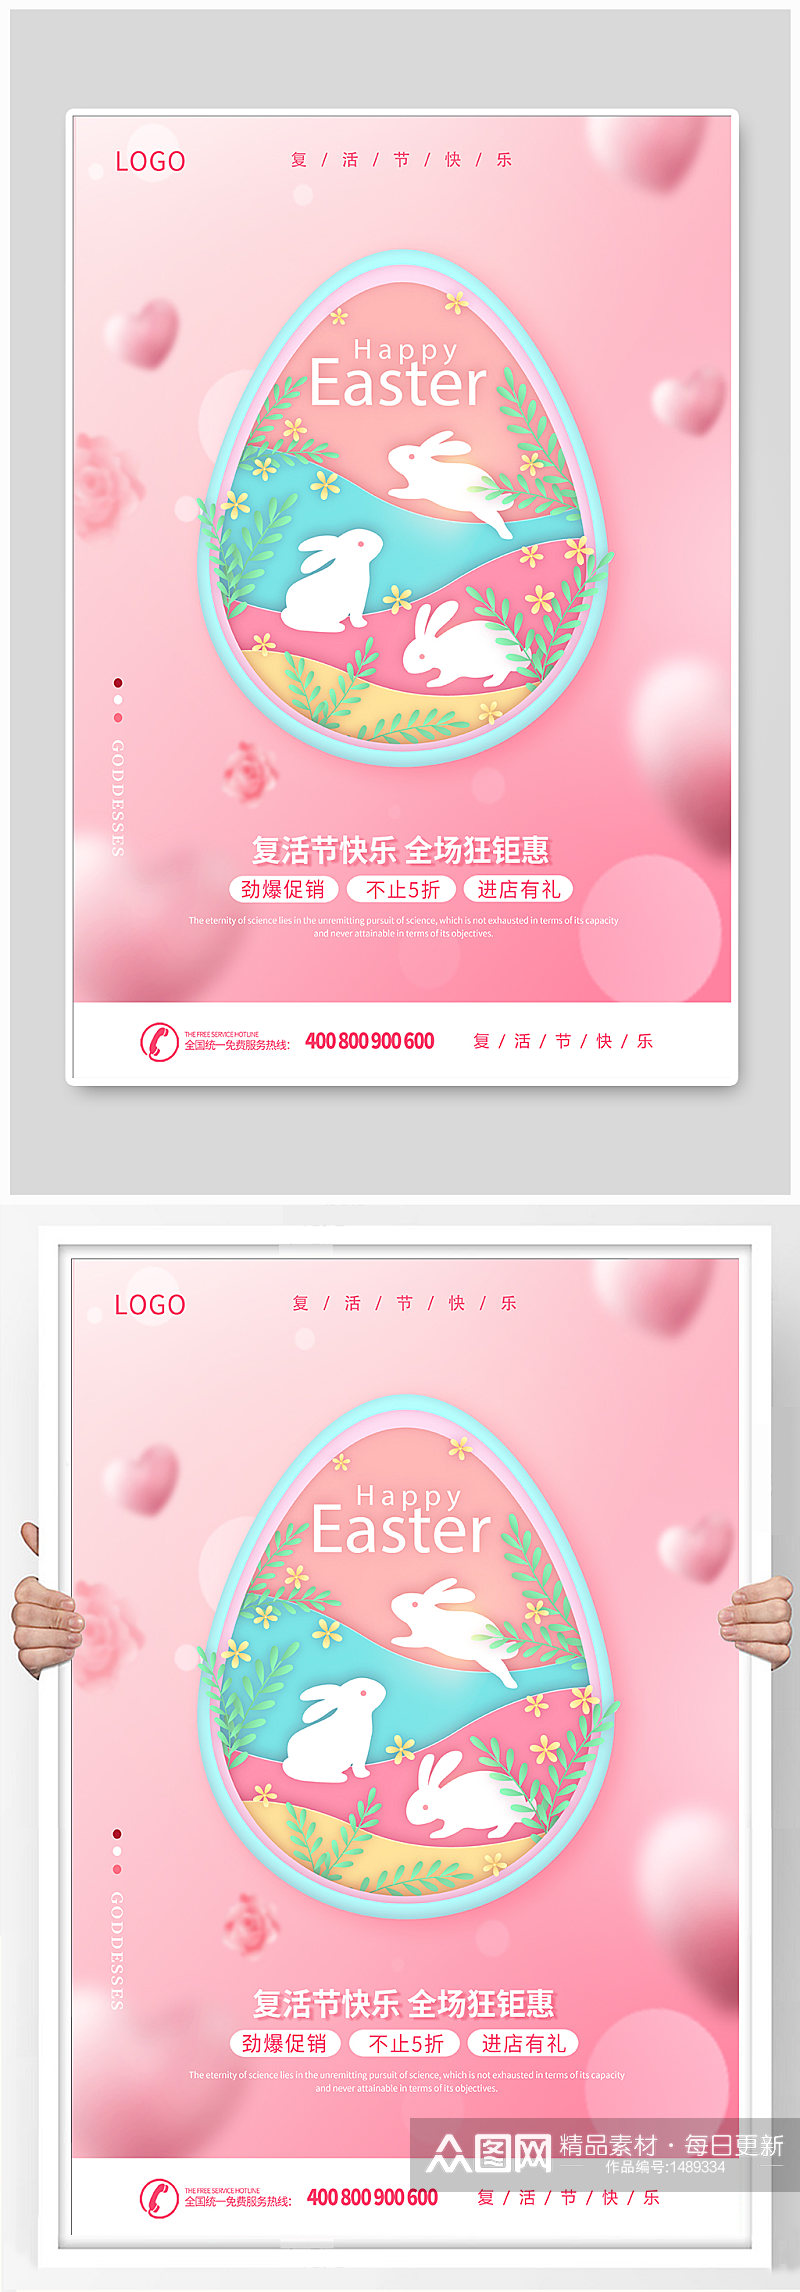 粉色复活节狂欢复活节促销宣传海报素材